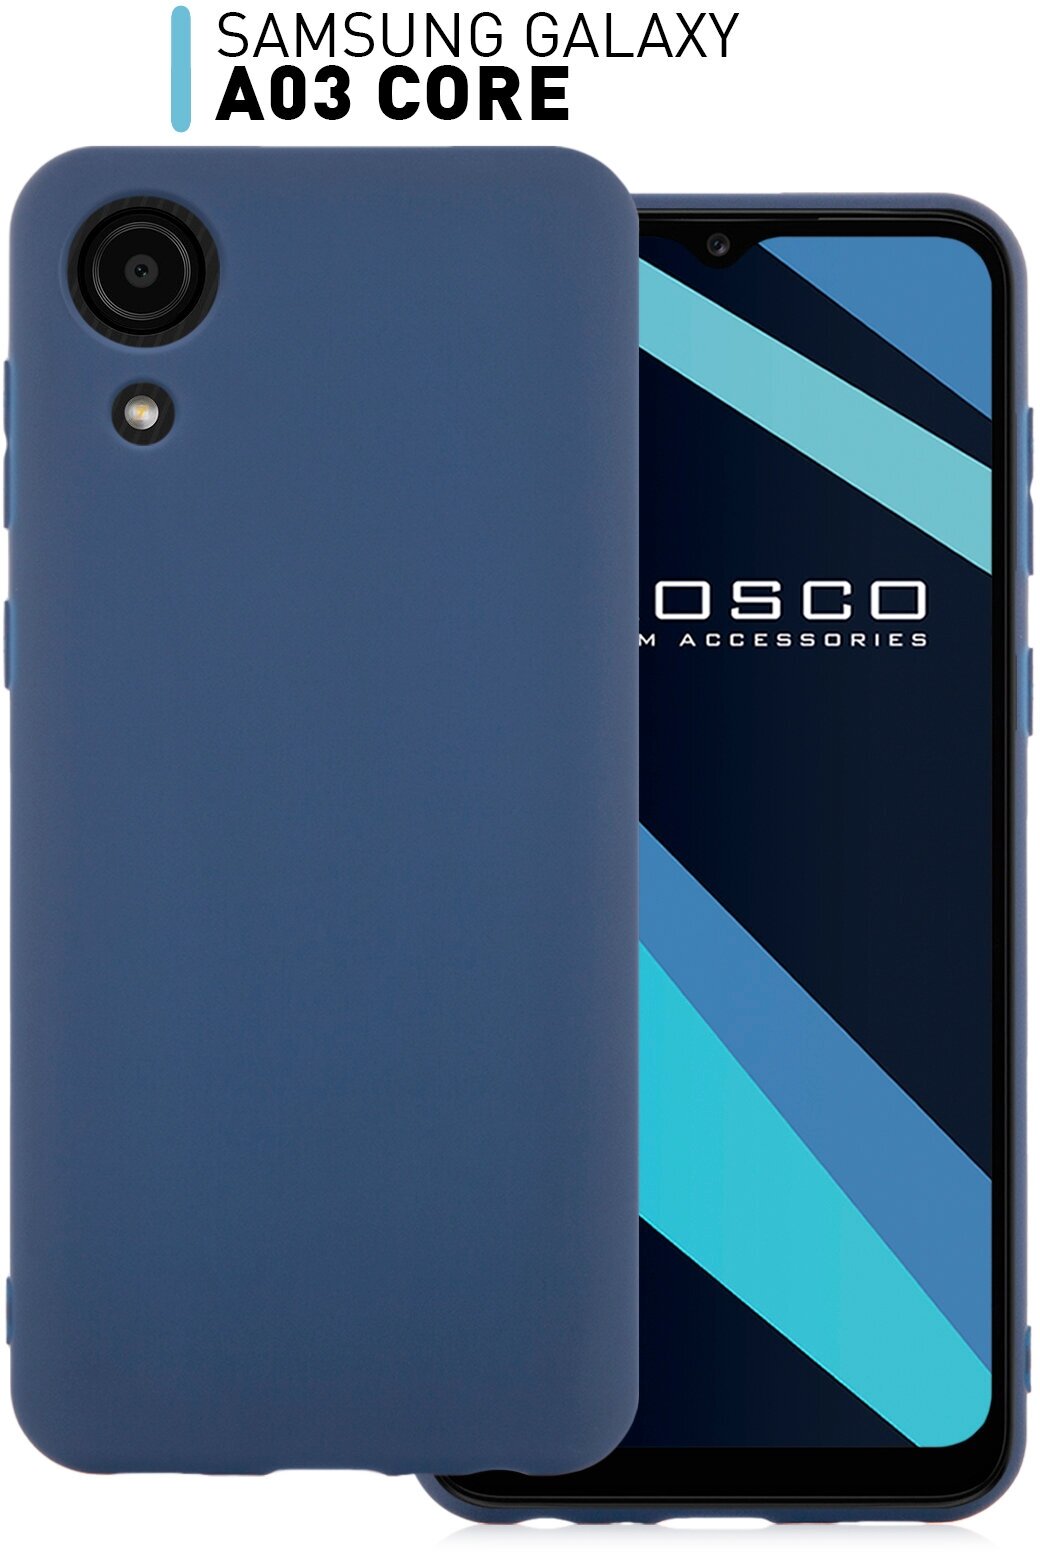 Чехол-накладка для Samsung Galaxy A03 Core (Самсунг Галакси А03 Кор) тонкий из силикона, матовое покрытием и защита модуля камер, темно-синяя ROSCO